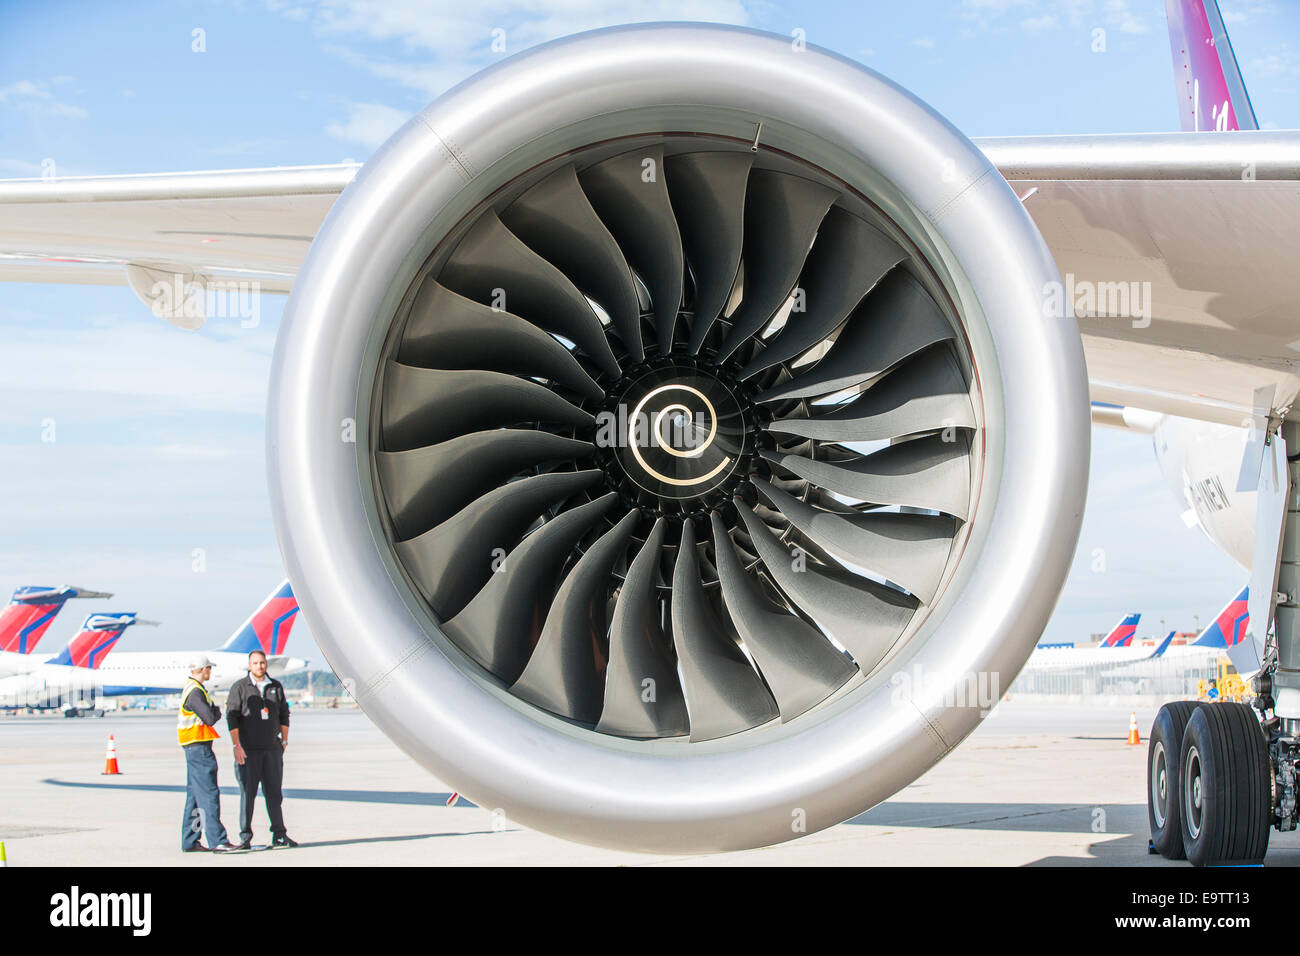 Une Rolls Royce Trent 1000 turboréacteur monté sur un Boeing 787 Dreamliner pour Virgin Atlantic. Banque D'Images